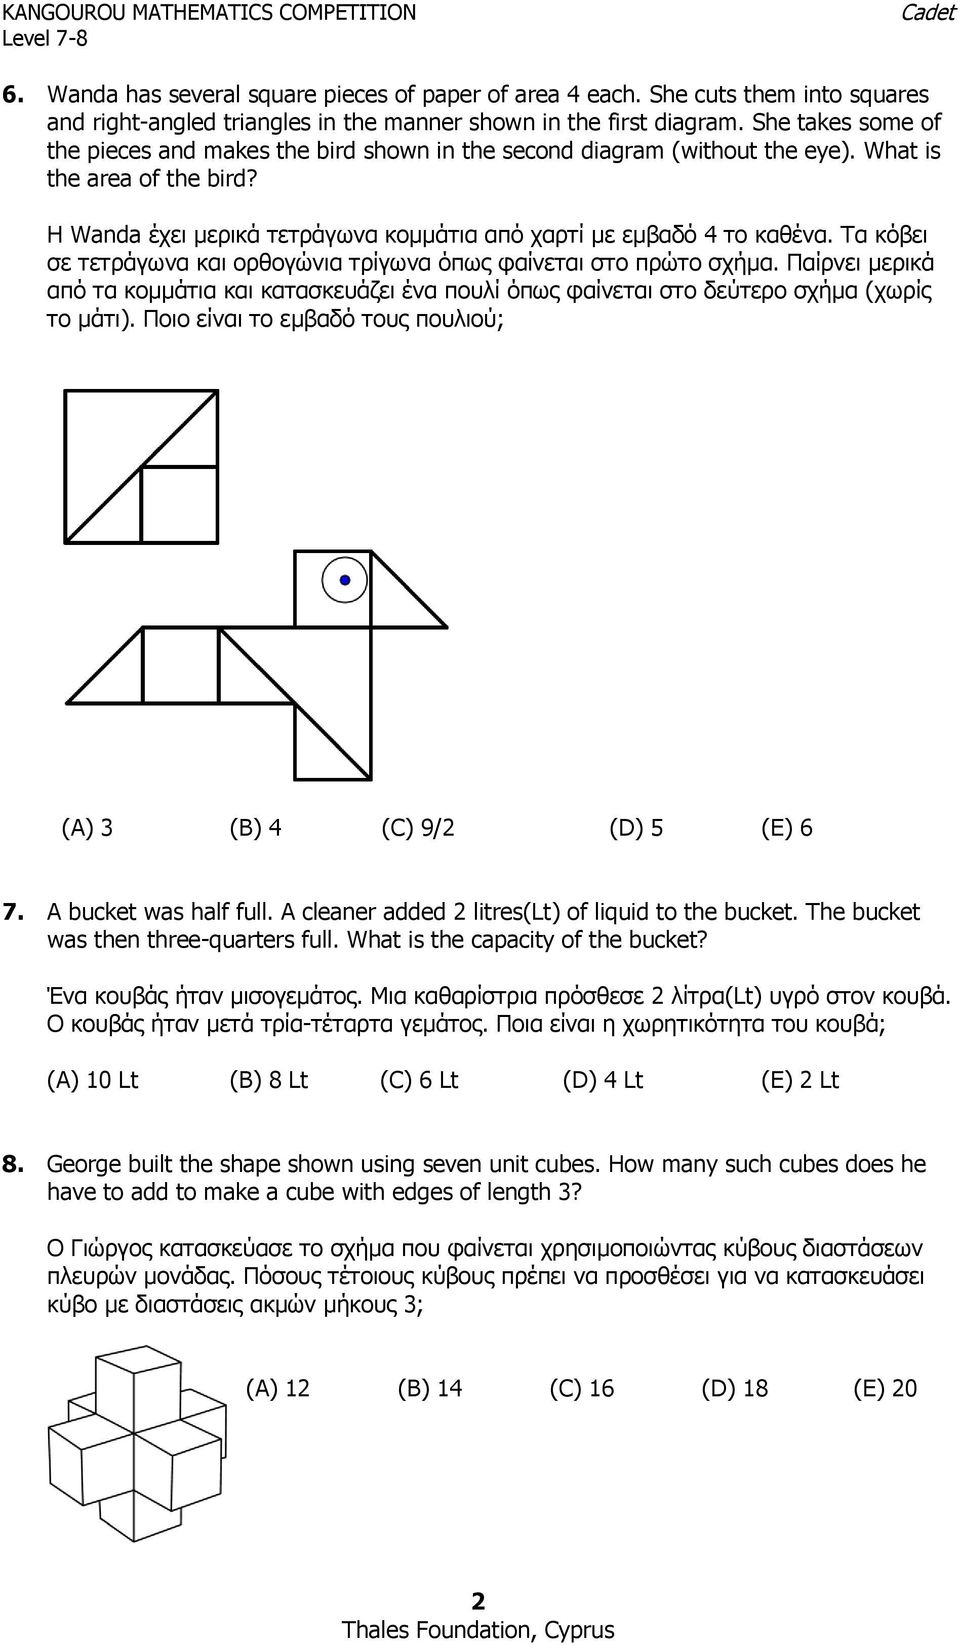 Τα κόβει σε τετράγωνα και ορθογώνια τρίγωνα όπως φαίνεται στο πρώτο σχήμα. Παίρνει μερικά από τα κομμάτια και κατασκευάζει ένα πουλί όπως φαίνεται στο δεύτερο σχήμα (χωρίς το μάτι).